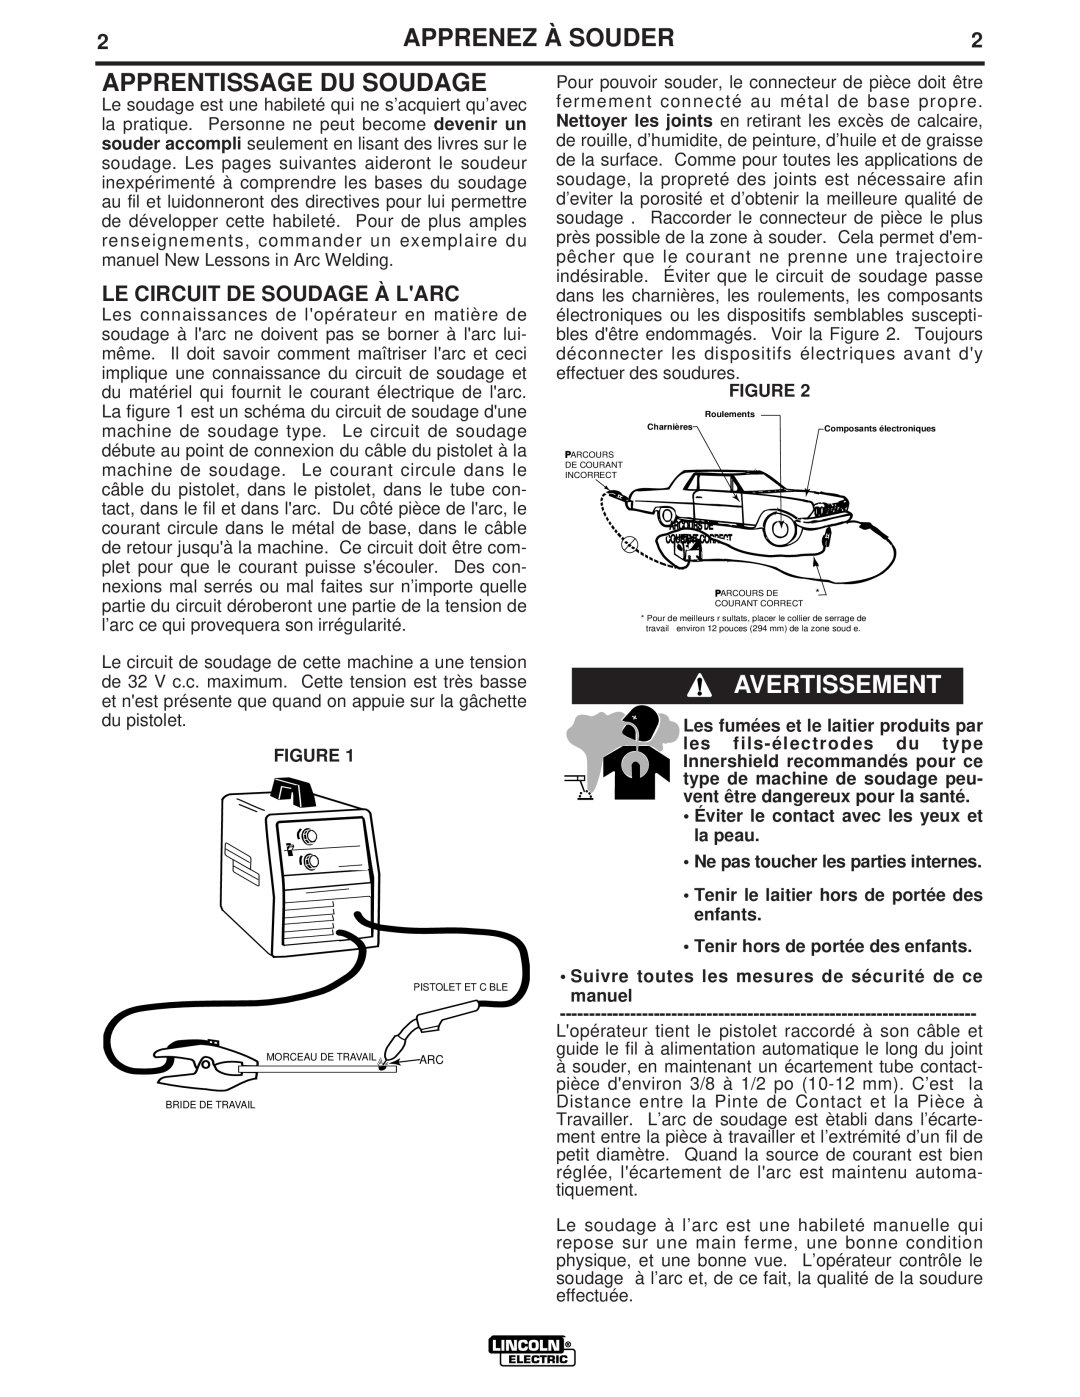 Lincoln Electric LTW1 manual Apprenez À Souder, Apprentissage Du Soudage, Avertissement, Le Circuit De Soudage À Larc 